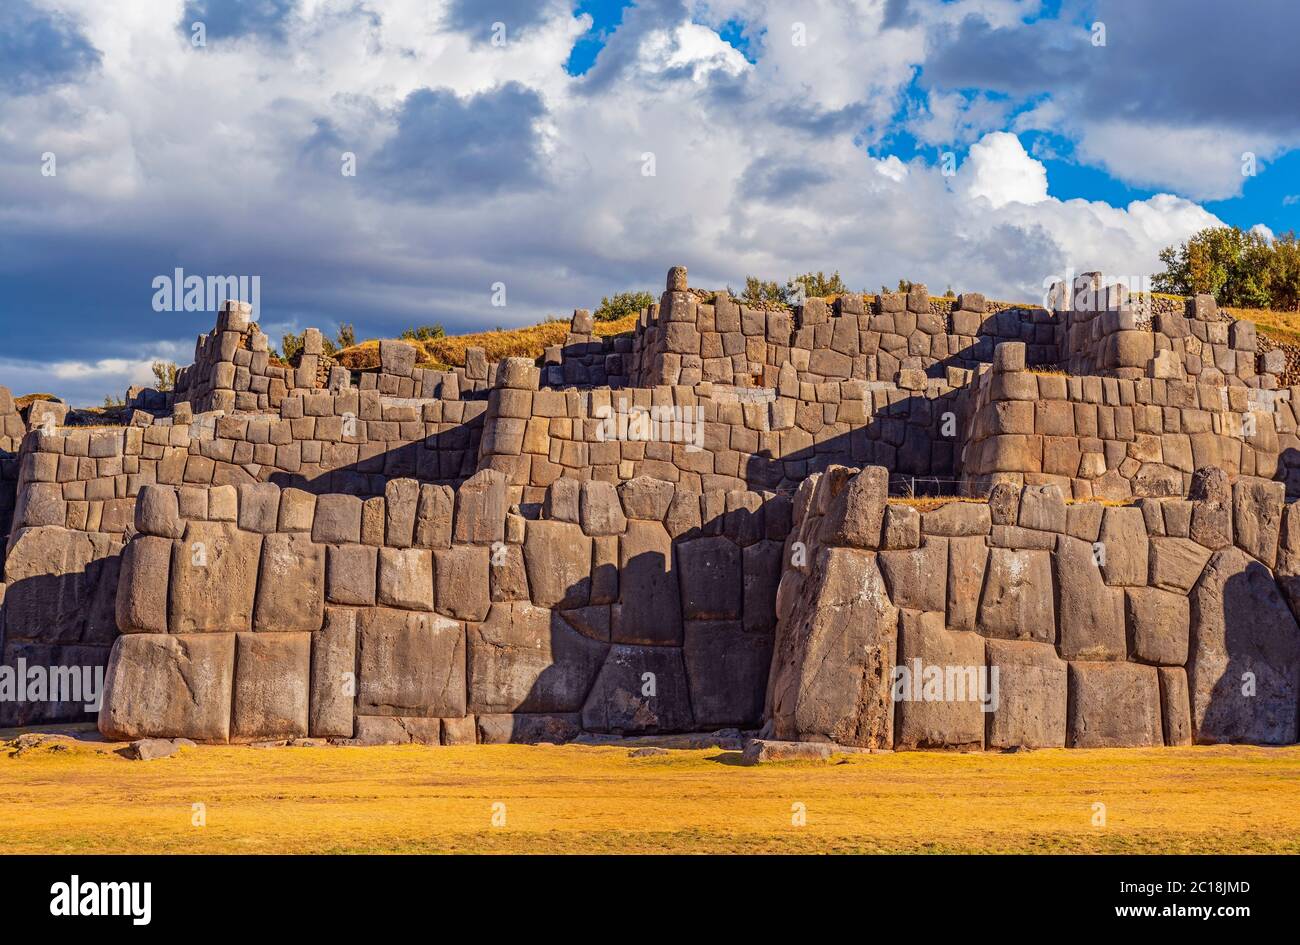 Les ruines de l'Inca avec le rocher géant de granit de la forteresse de Sacsayhuaman, Cusco, Pérou. Banque D'Images